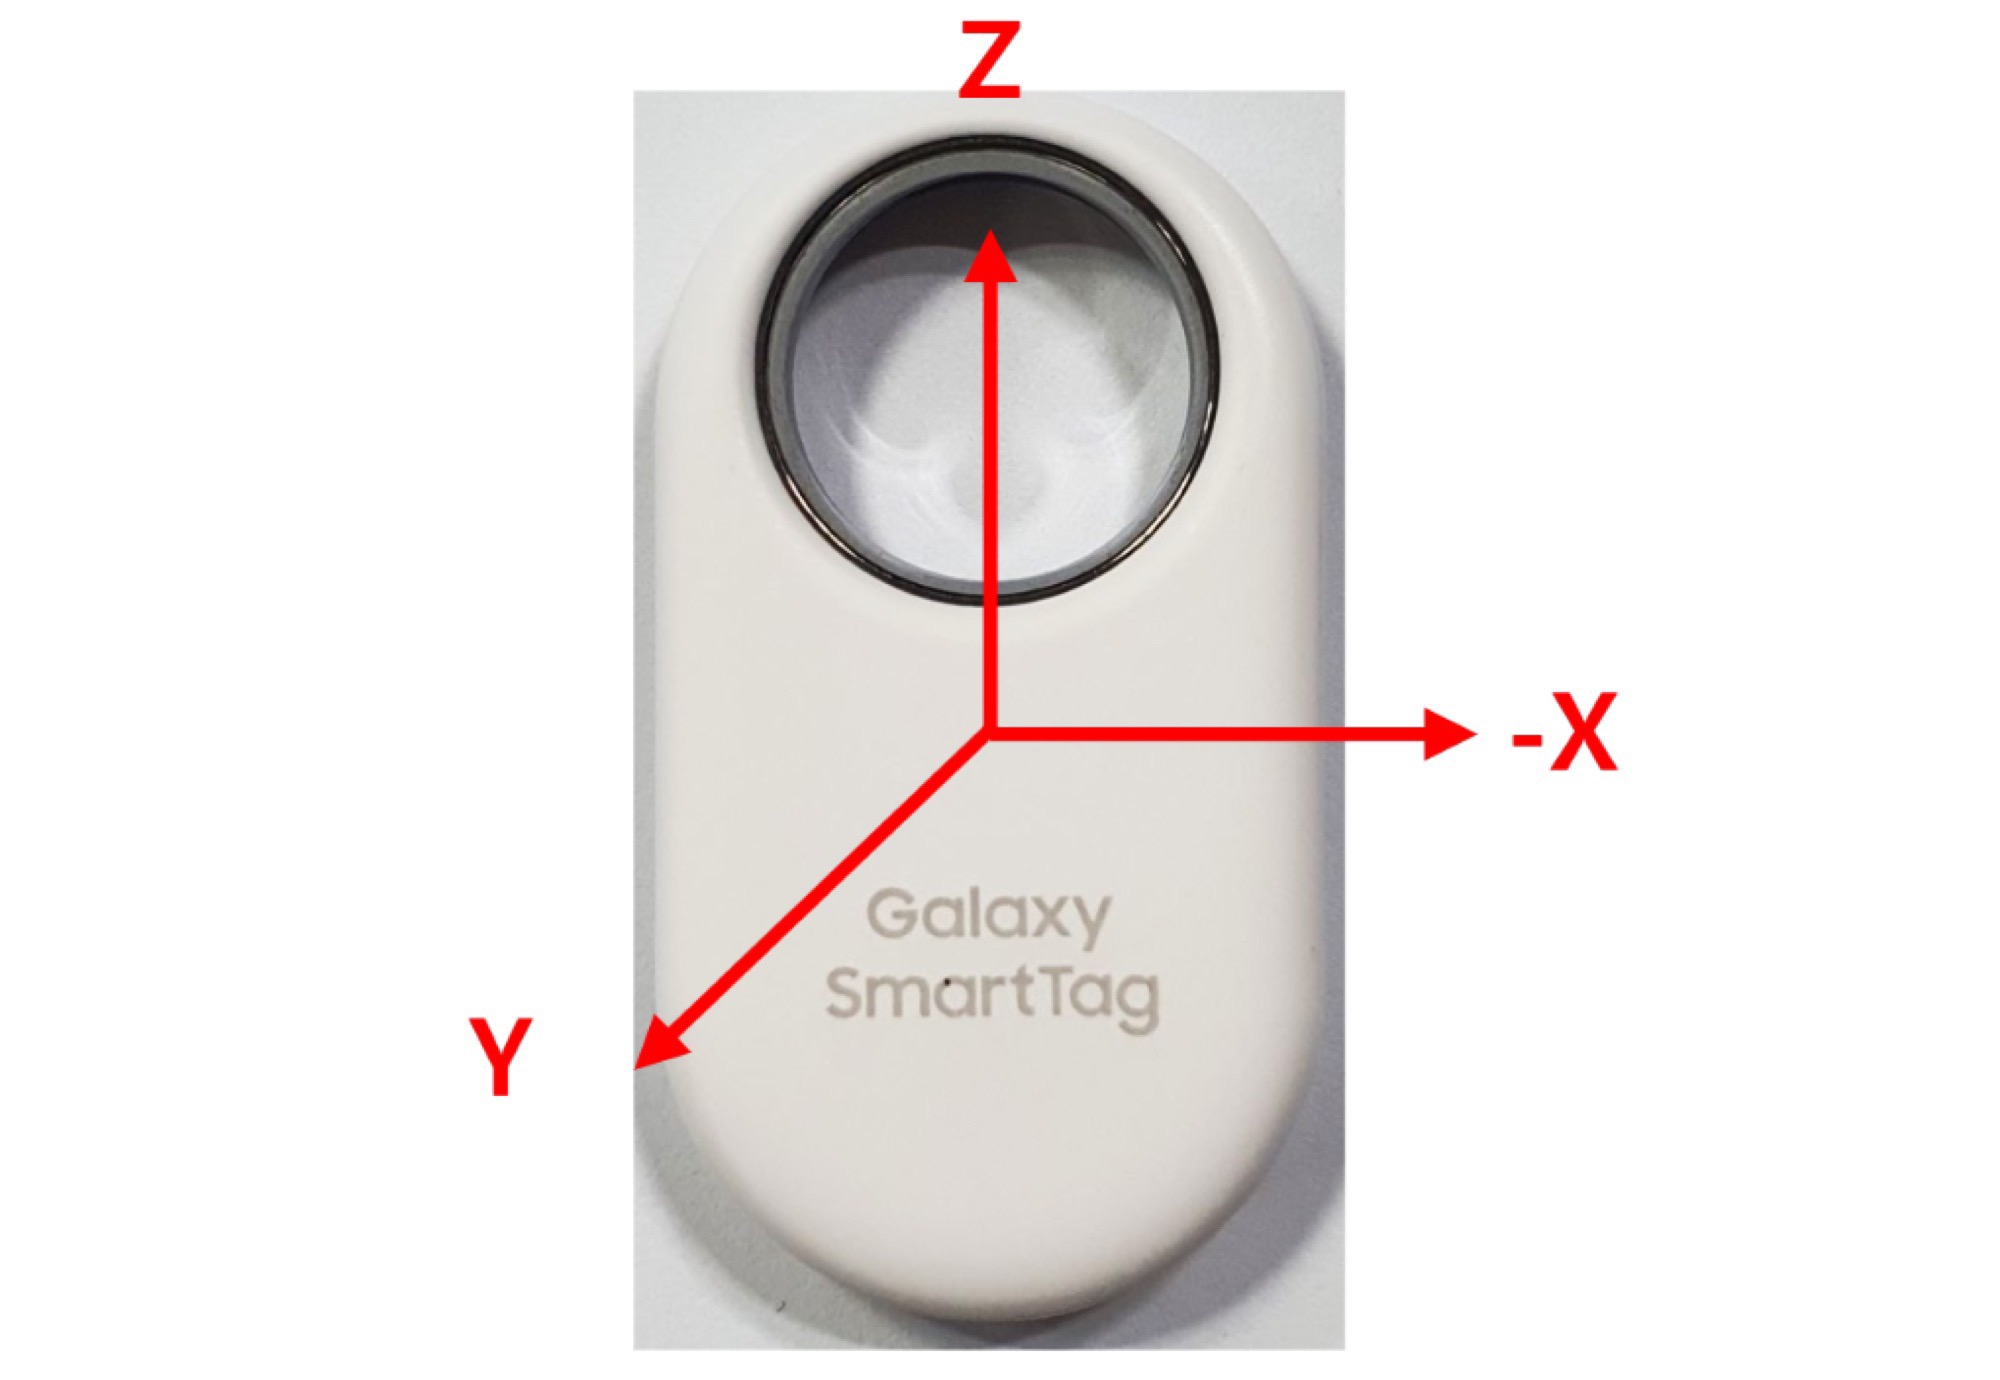 Samsung Galaxy SmartTag 2 leakt mit brandneuem Design und UWB-Chip